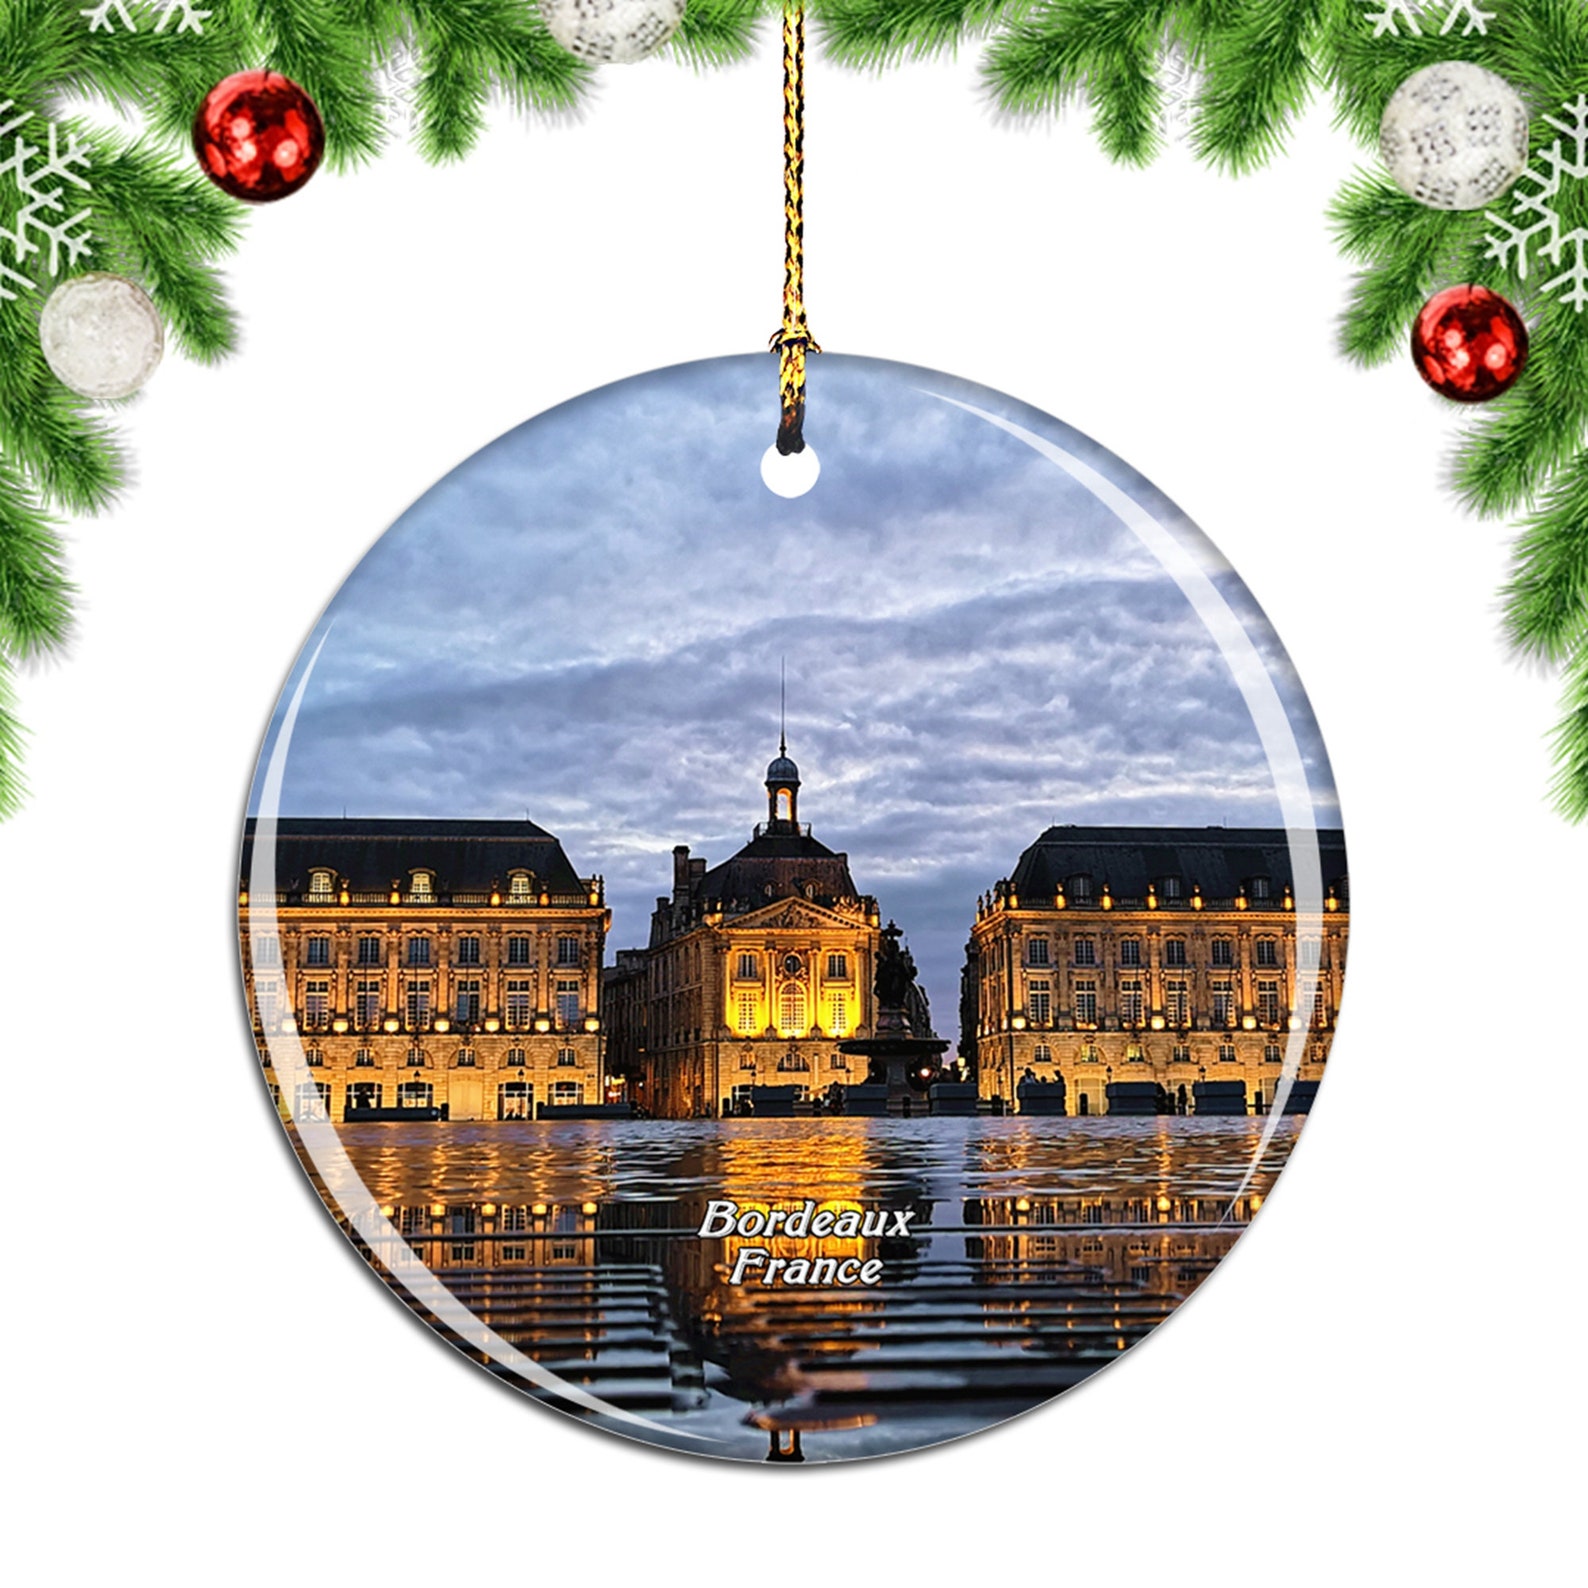 Bordeaux France Christmas Ornament Souvenir Gift Porcelain | Etsy